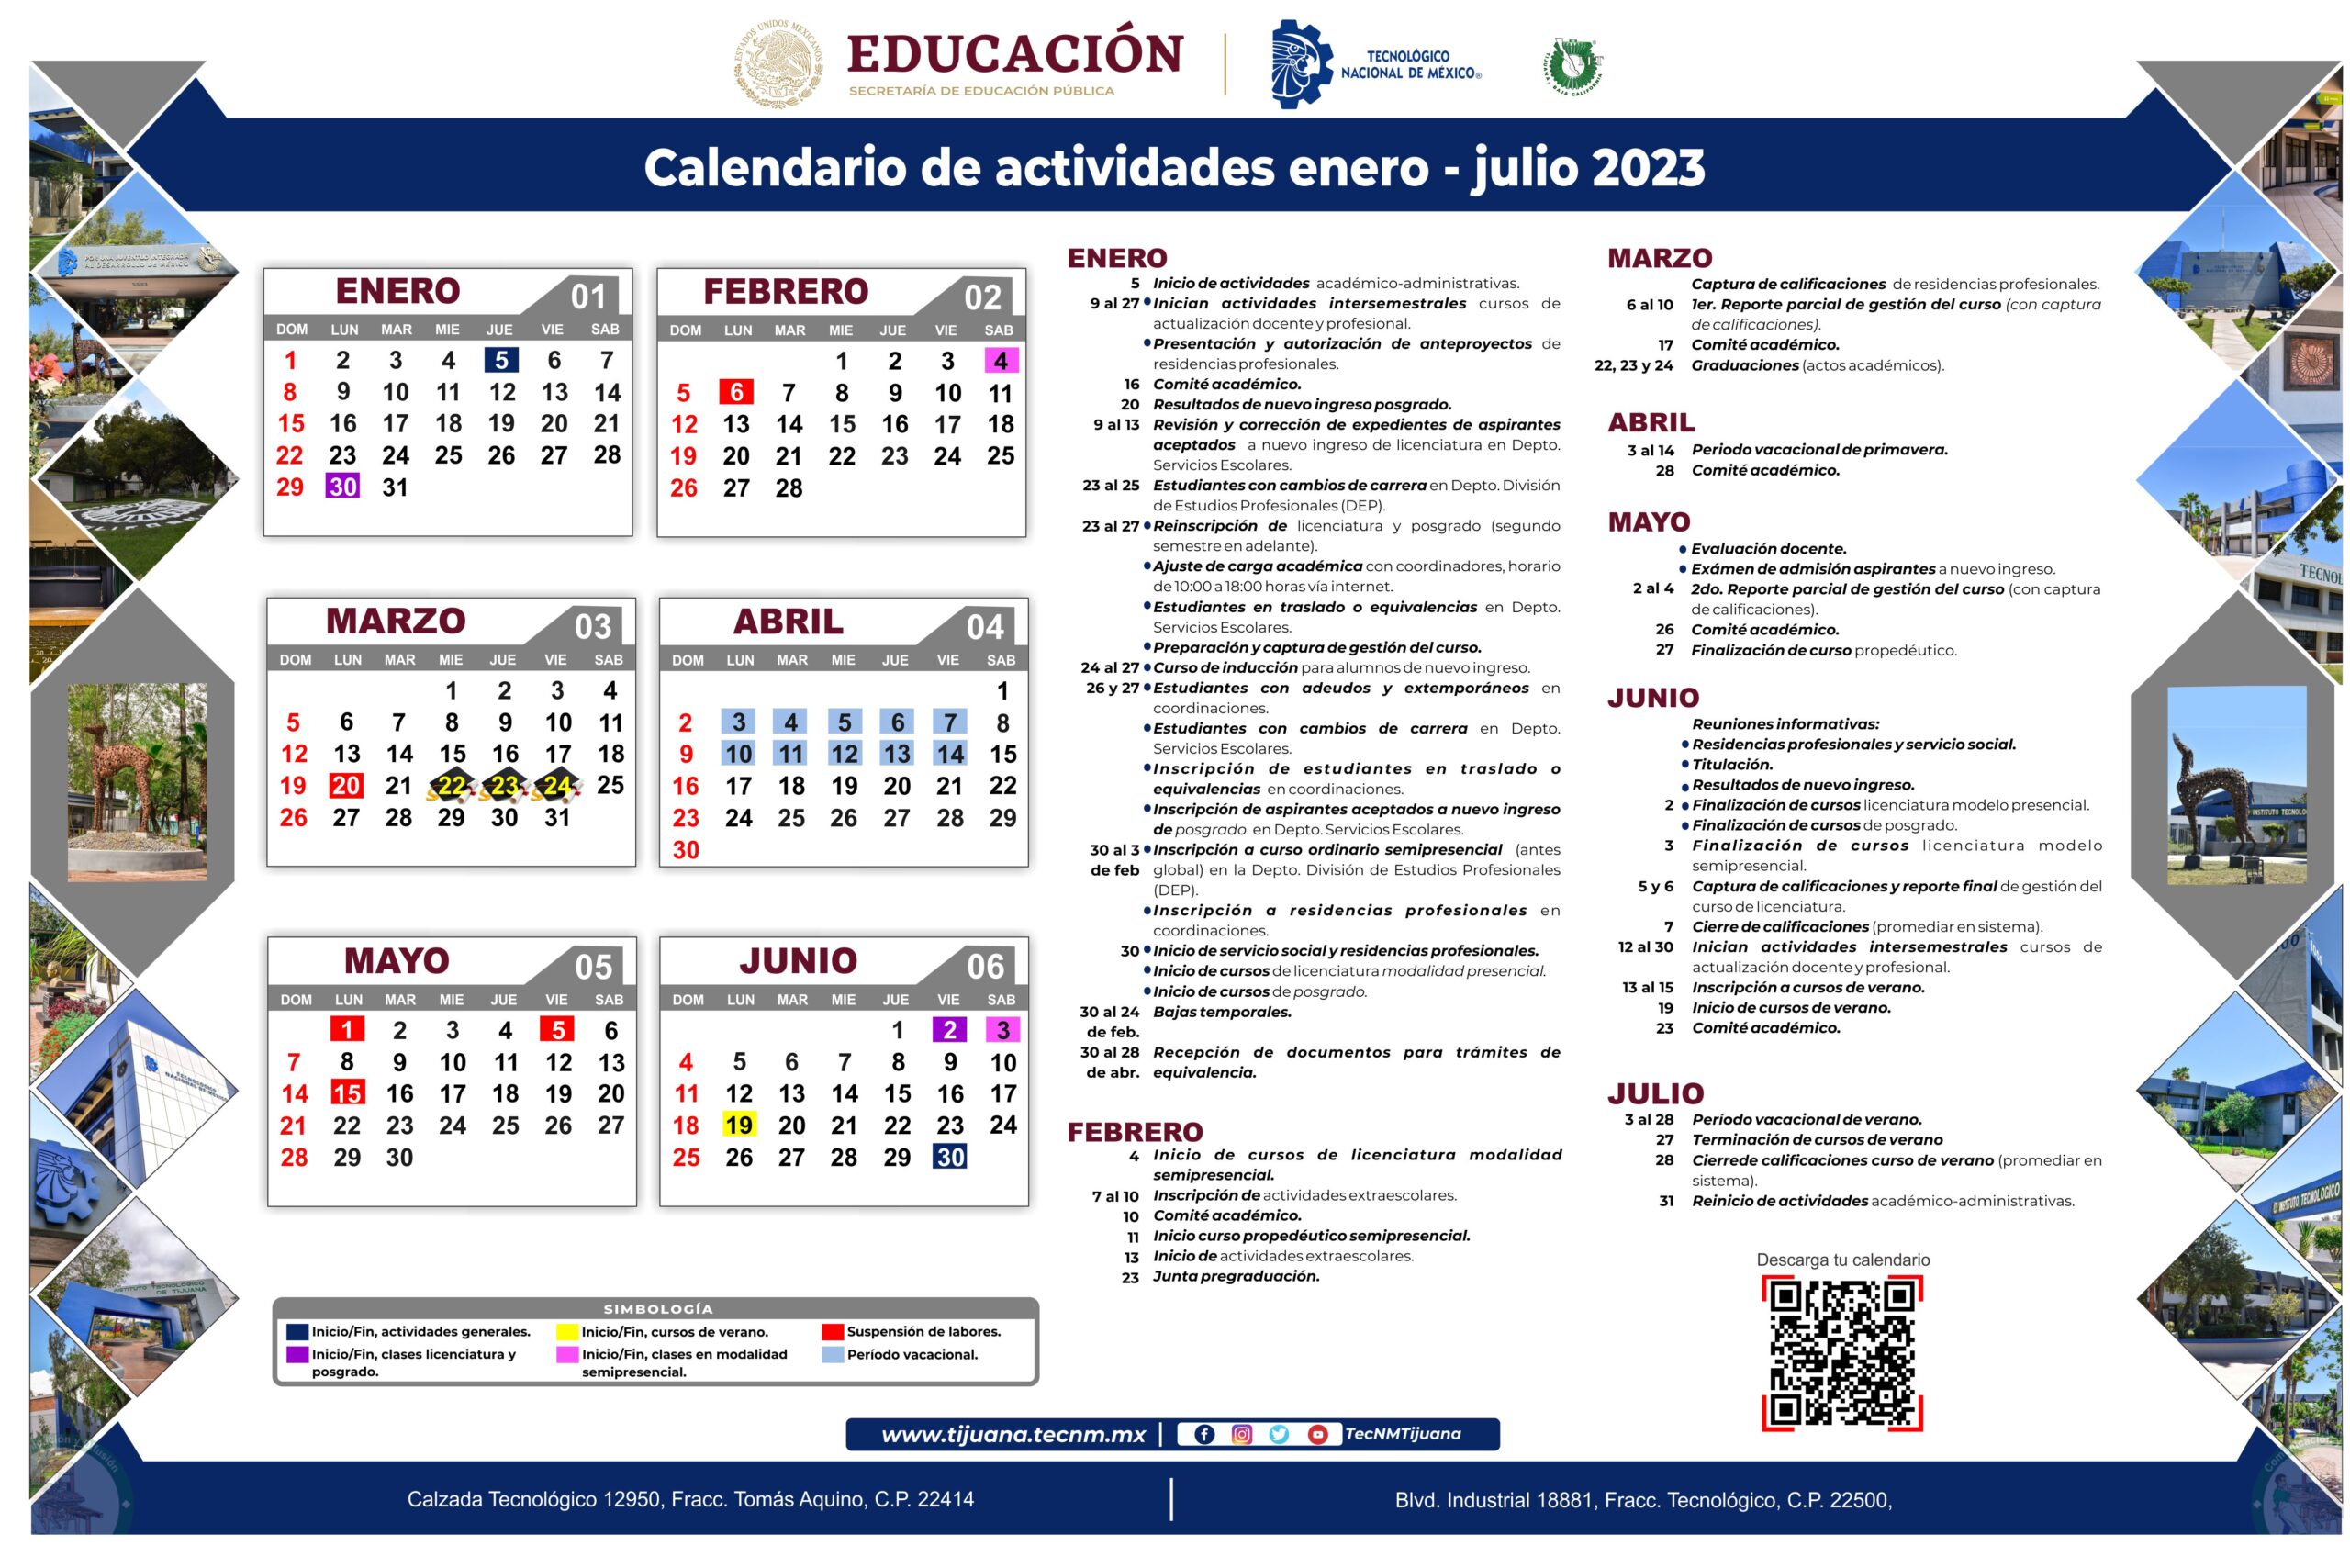 Calendario de Actividades Academicas enero julio 2023 Tecnológico